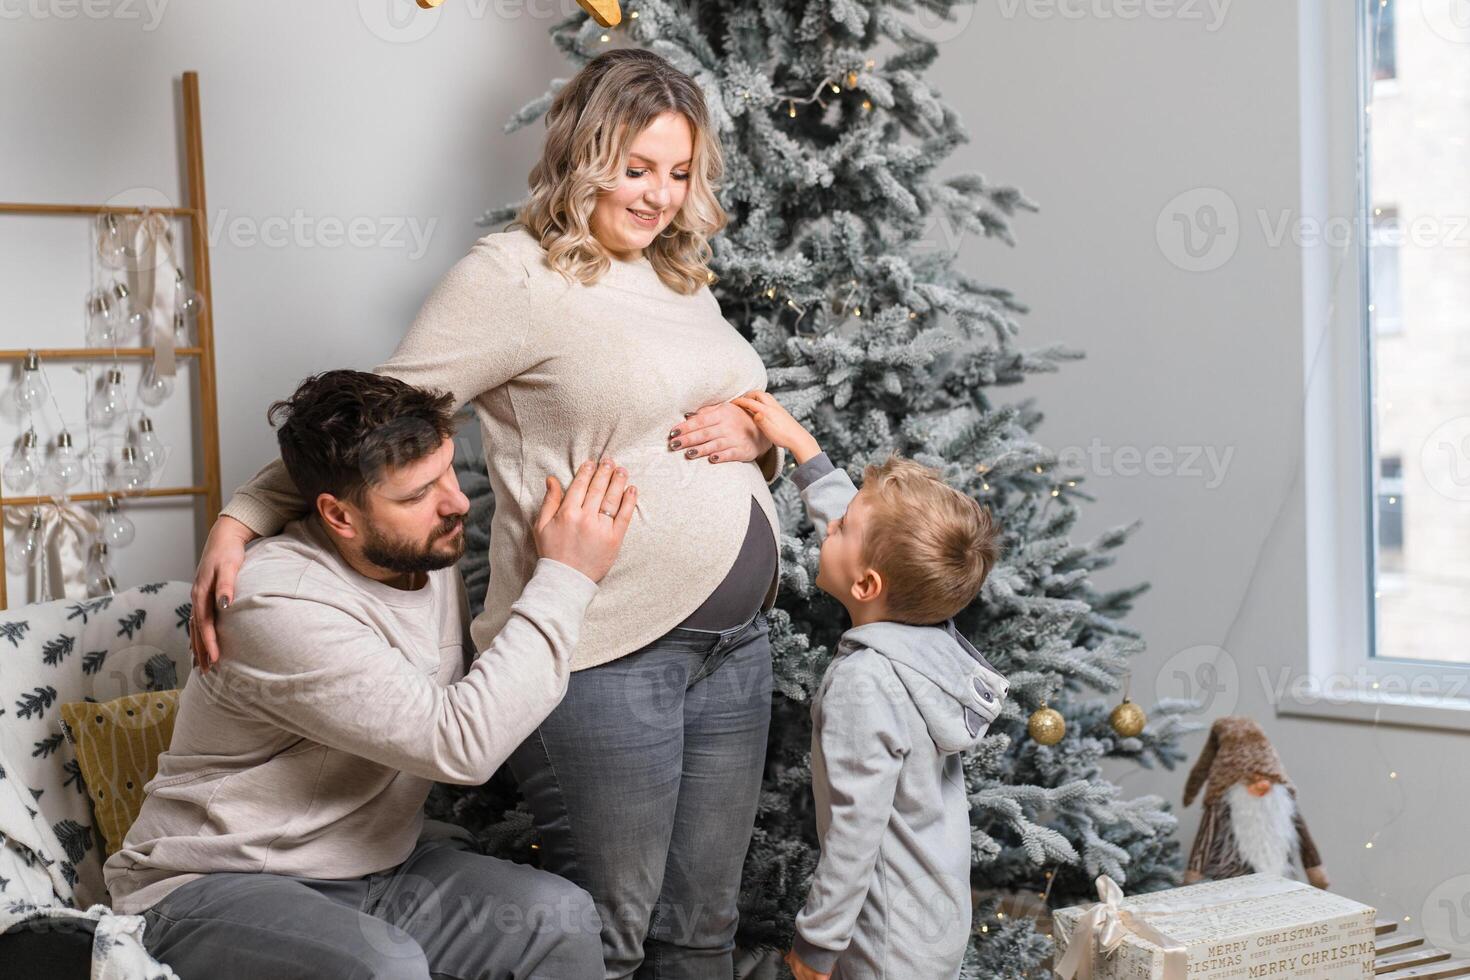 Navidad familia felicidad retrato de papá, embarazada mamá y pequeño hijo sentado Sillón a hogar cerca Navidad árbol abrazo sonrisa foto